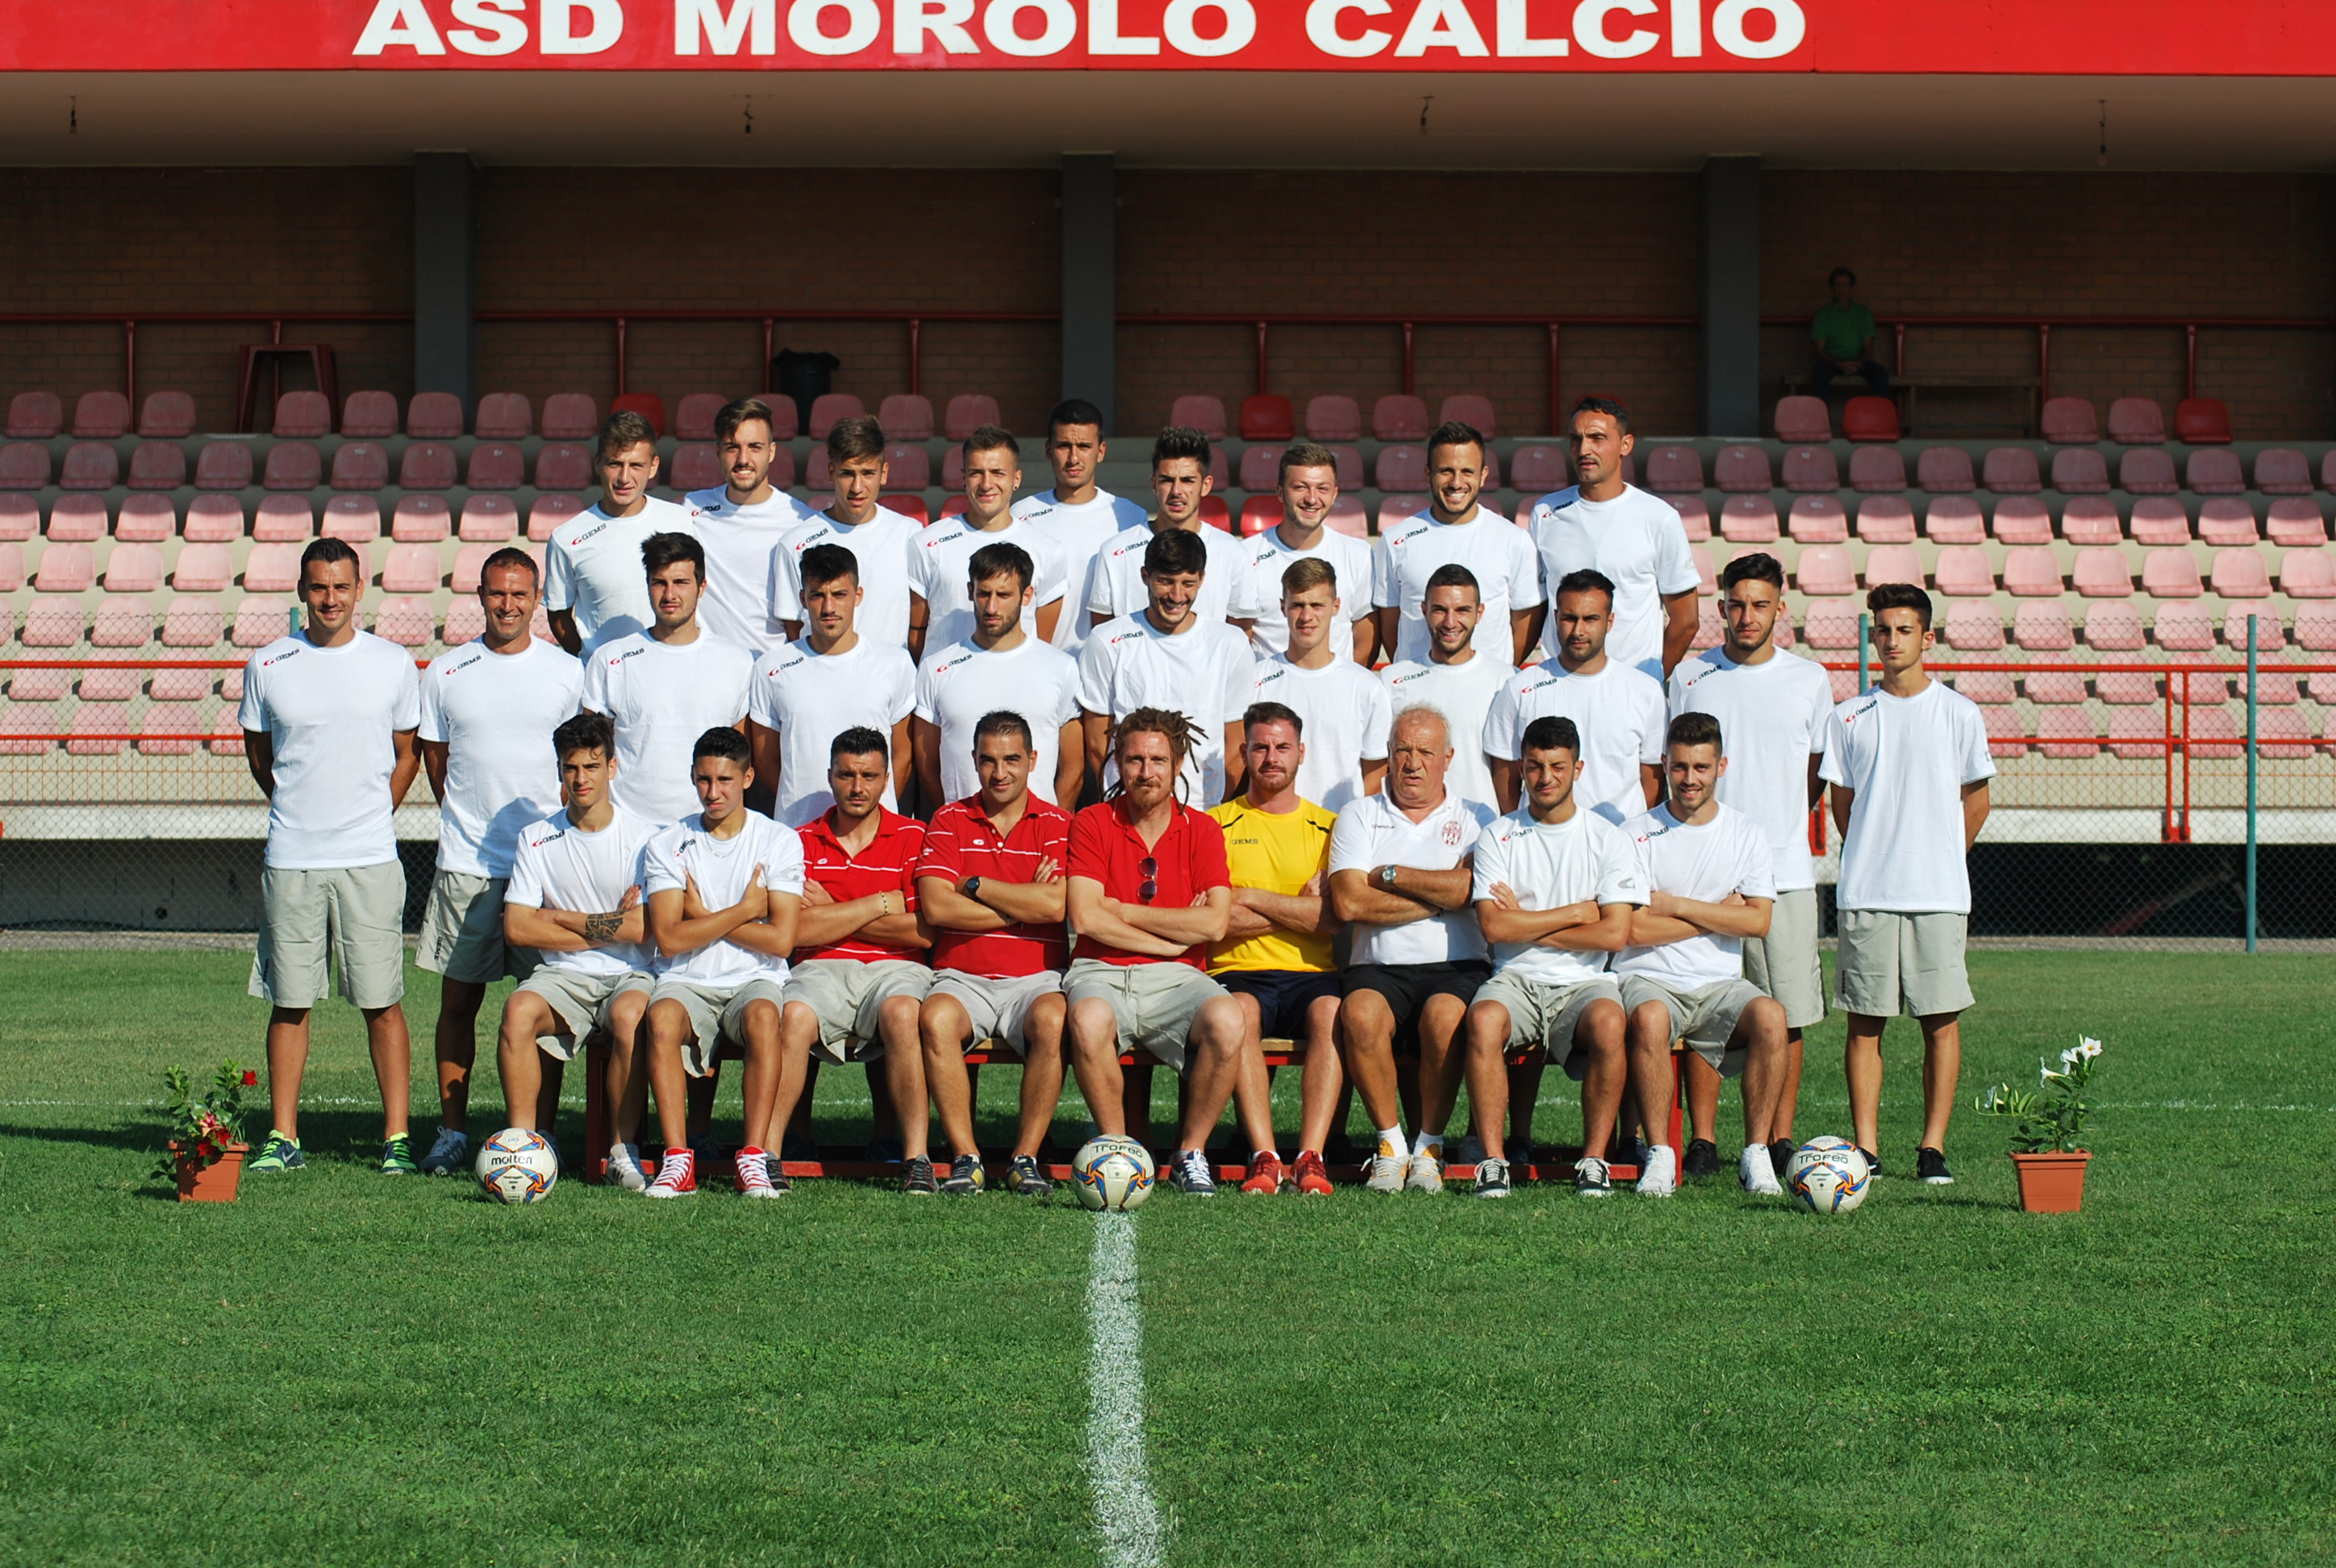 Morolo Calcio, il ds Pistolesi presenta lo staff tecnico: “Uomini competenti nei ruoli chiave”